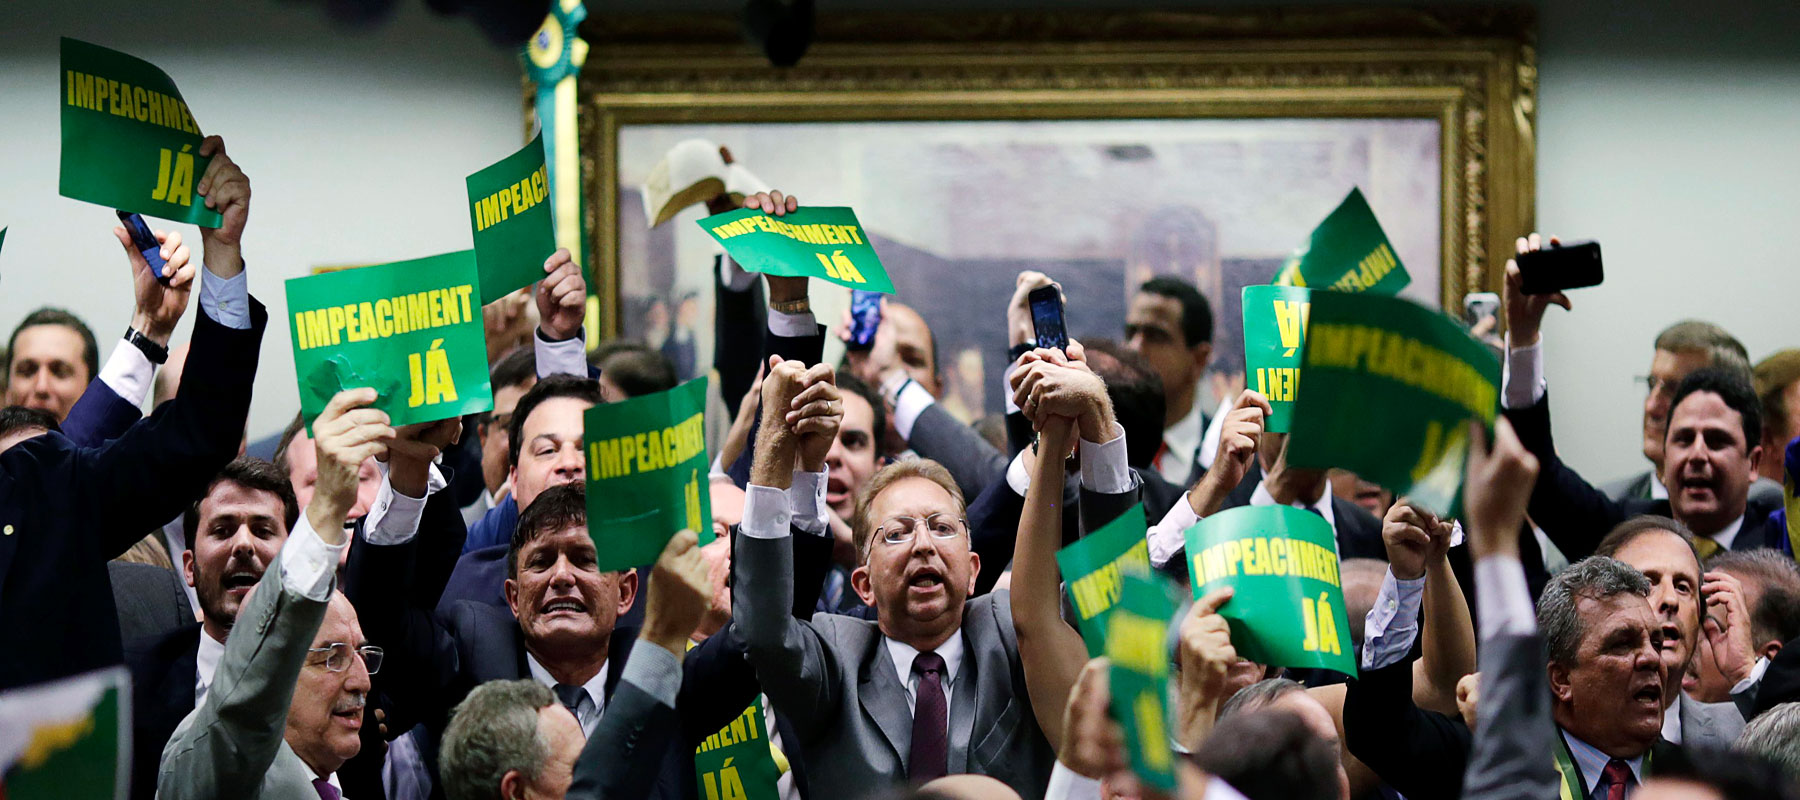 Mayoría de parlamentarios acusados de corrupción son los que promueven el juicio contra Rousseff.